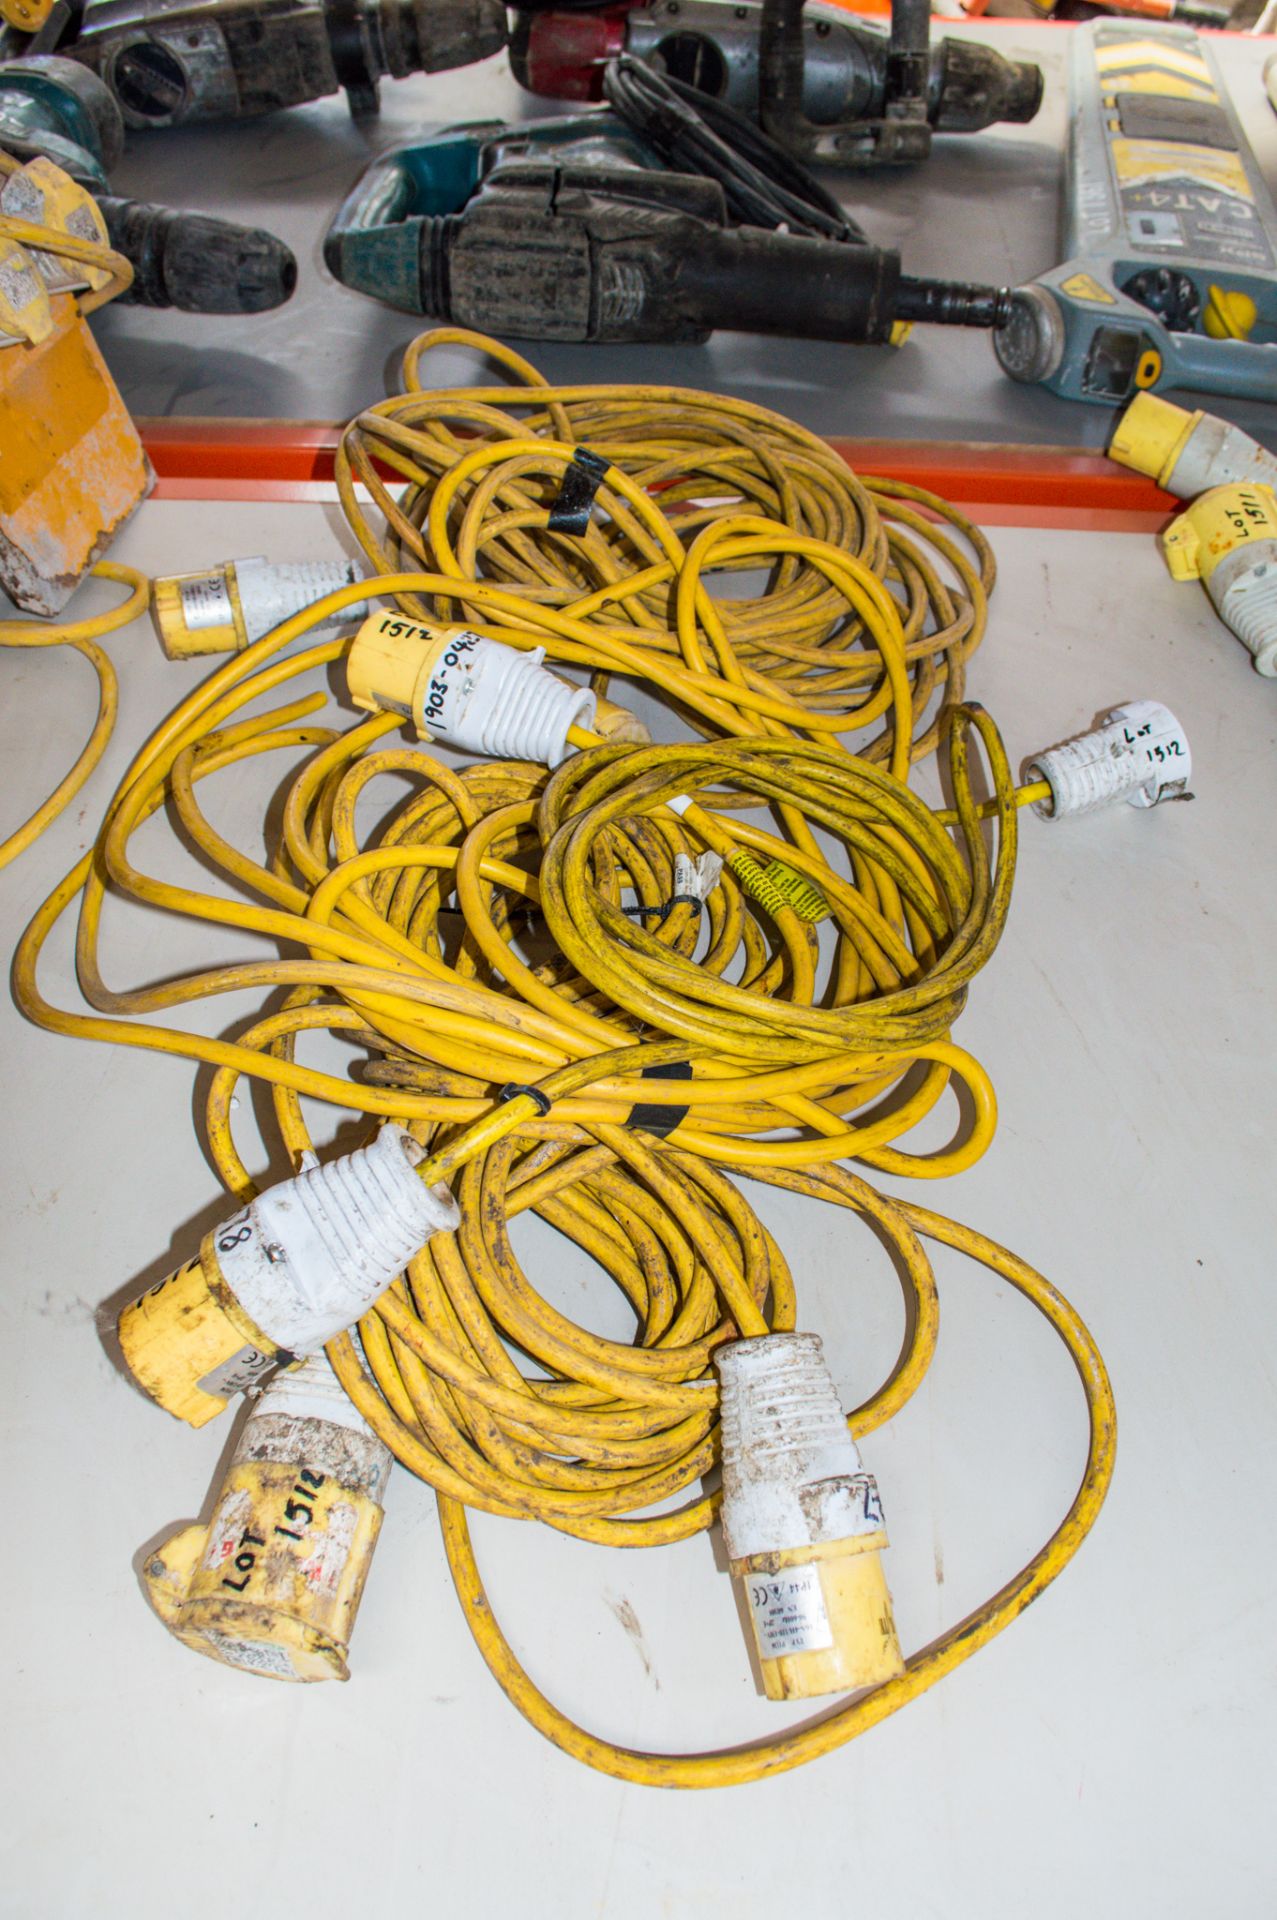 4 - 110 volt extension cables